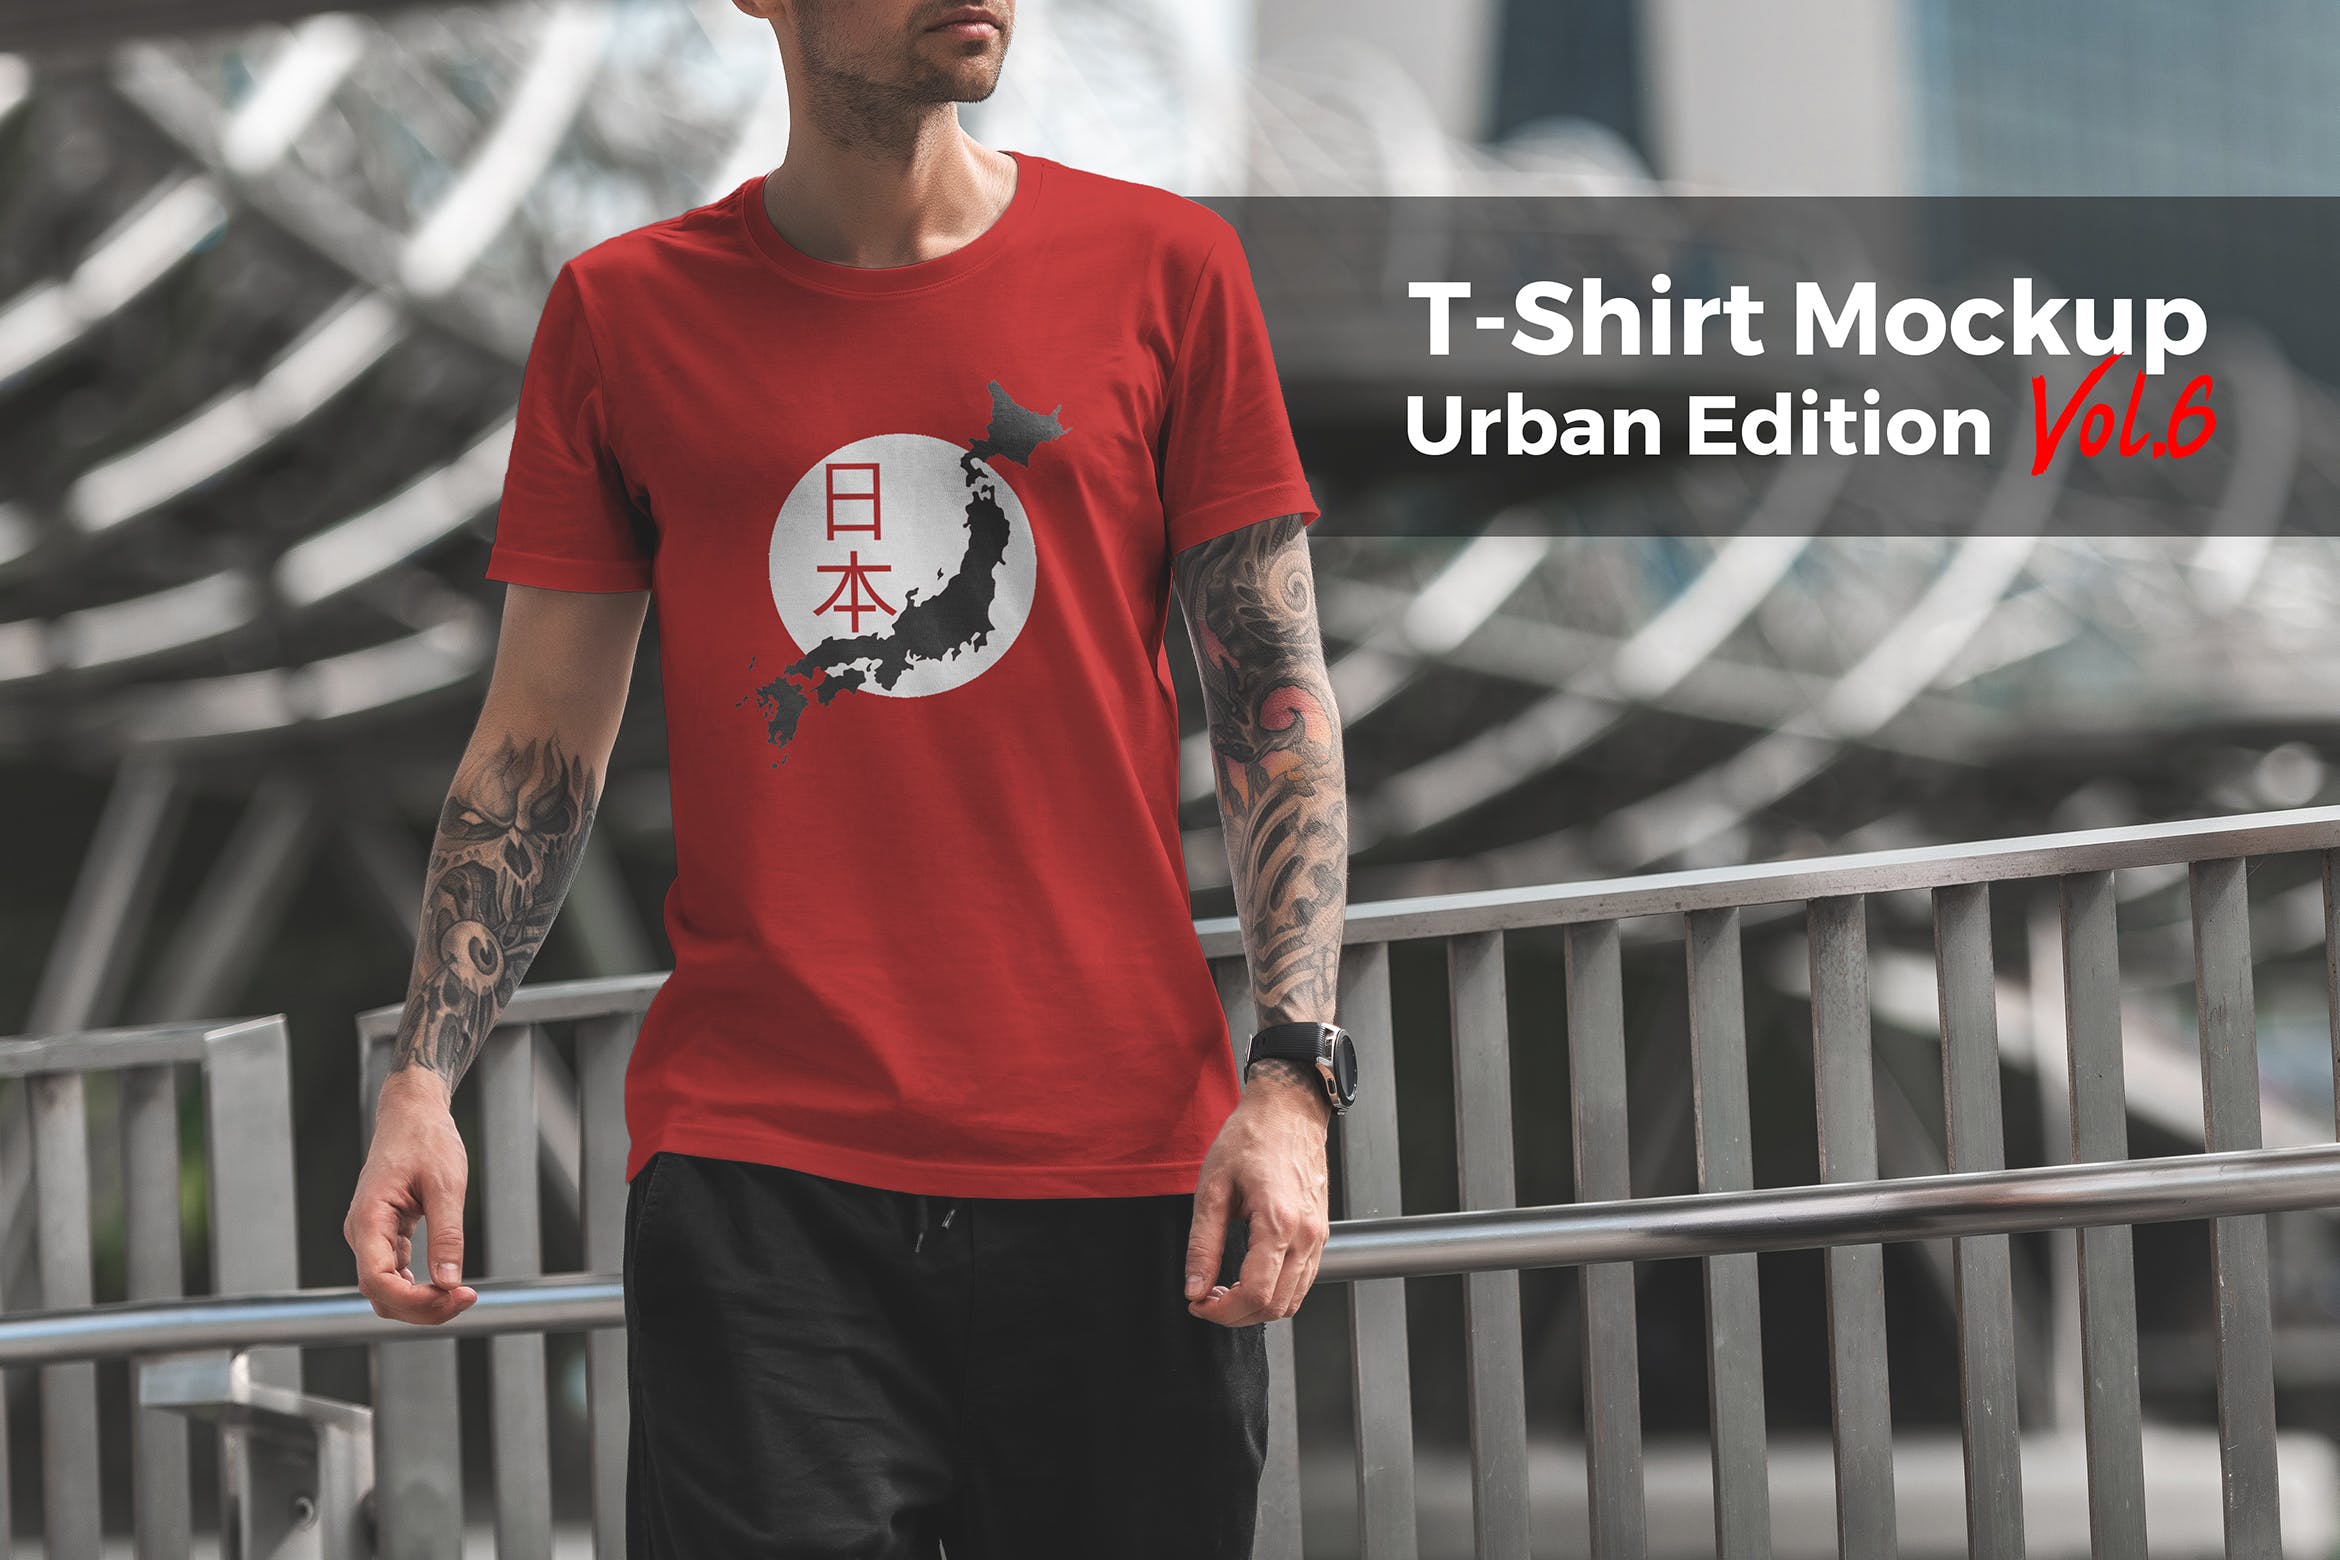 城市系列-印花T恤产品展示样机素材中国精选模板v6 T-Shirt Mockup Urban Edition Vol. 6插图